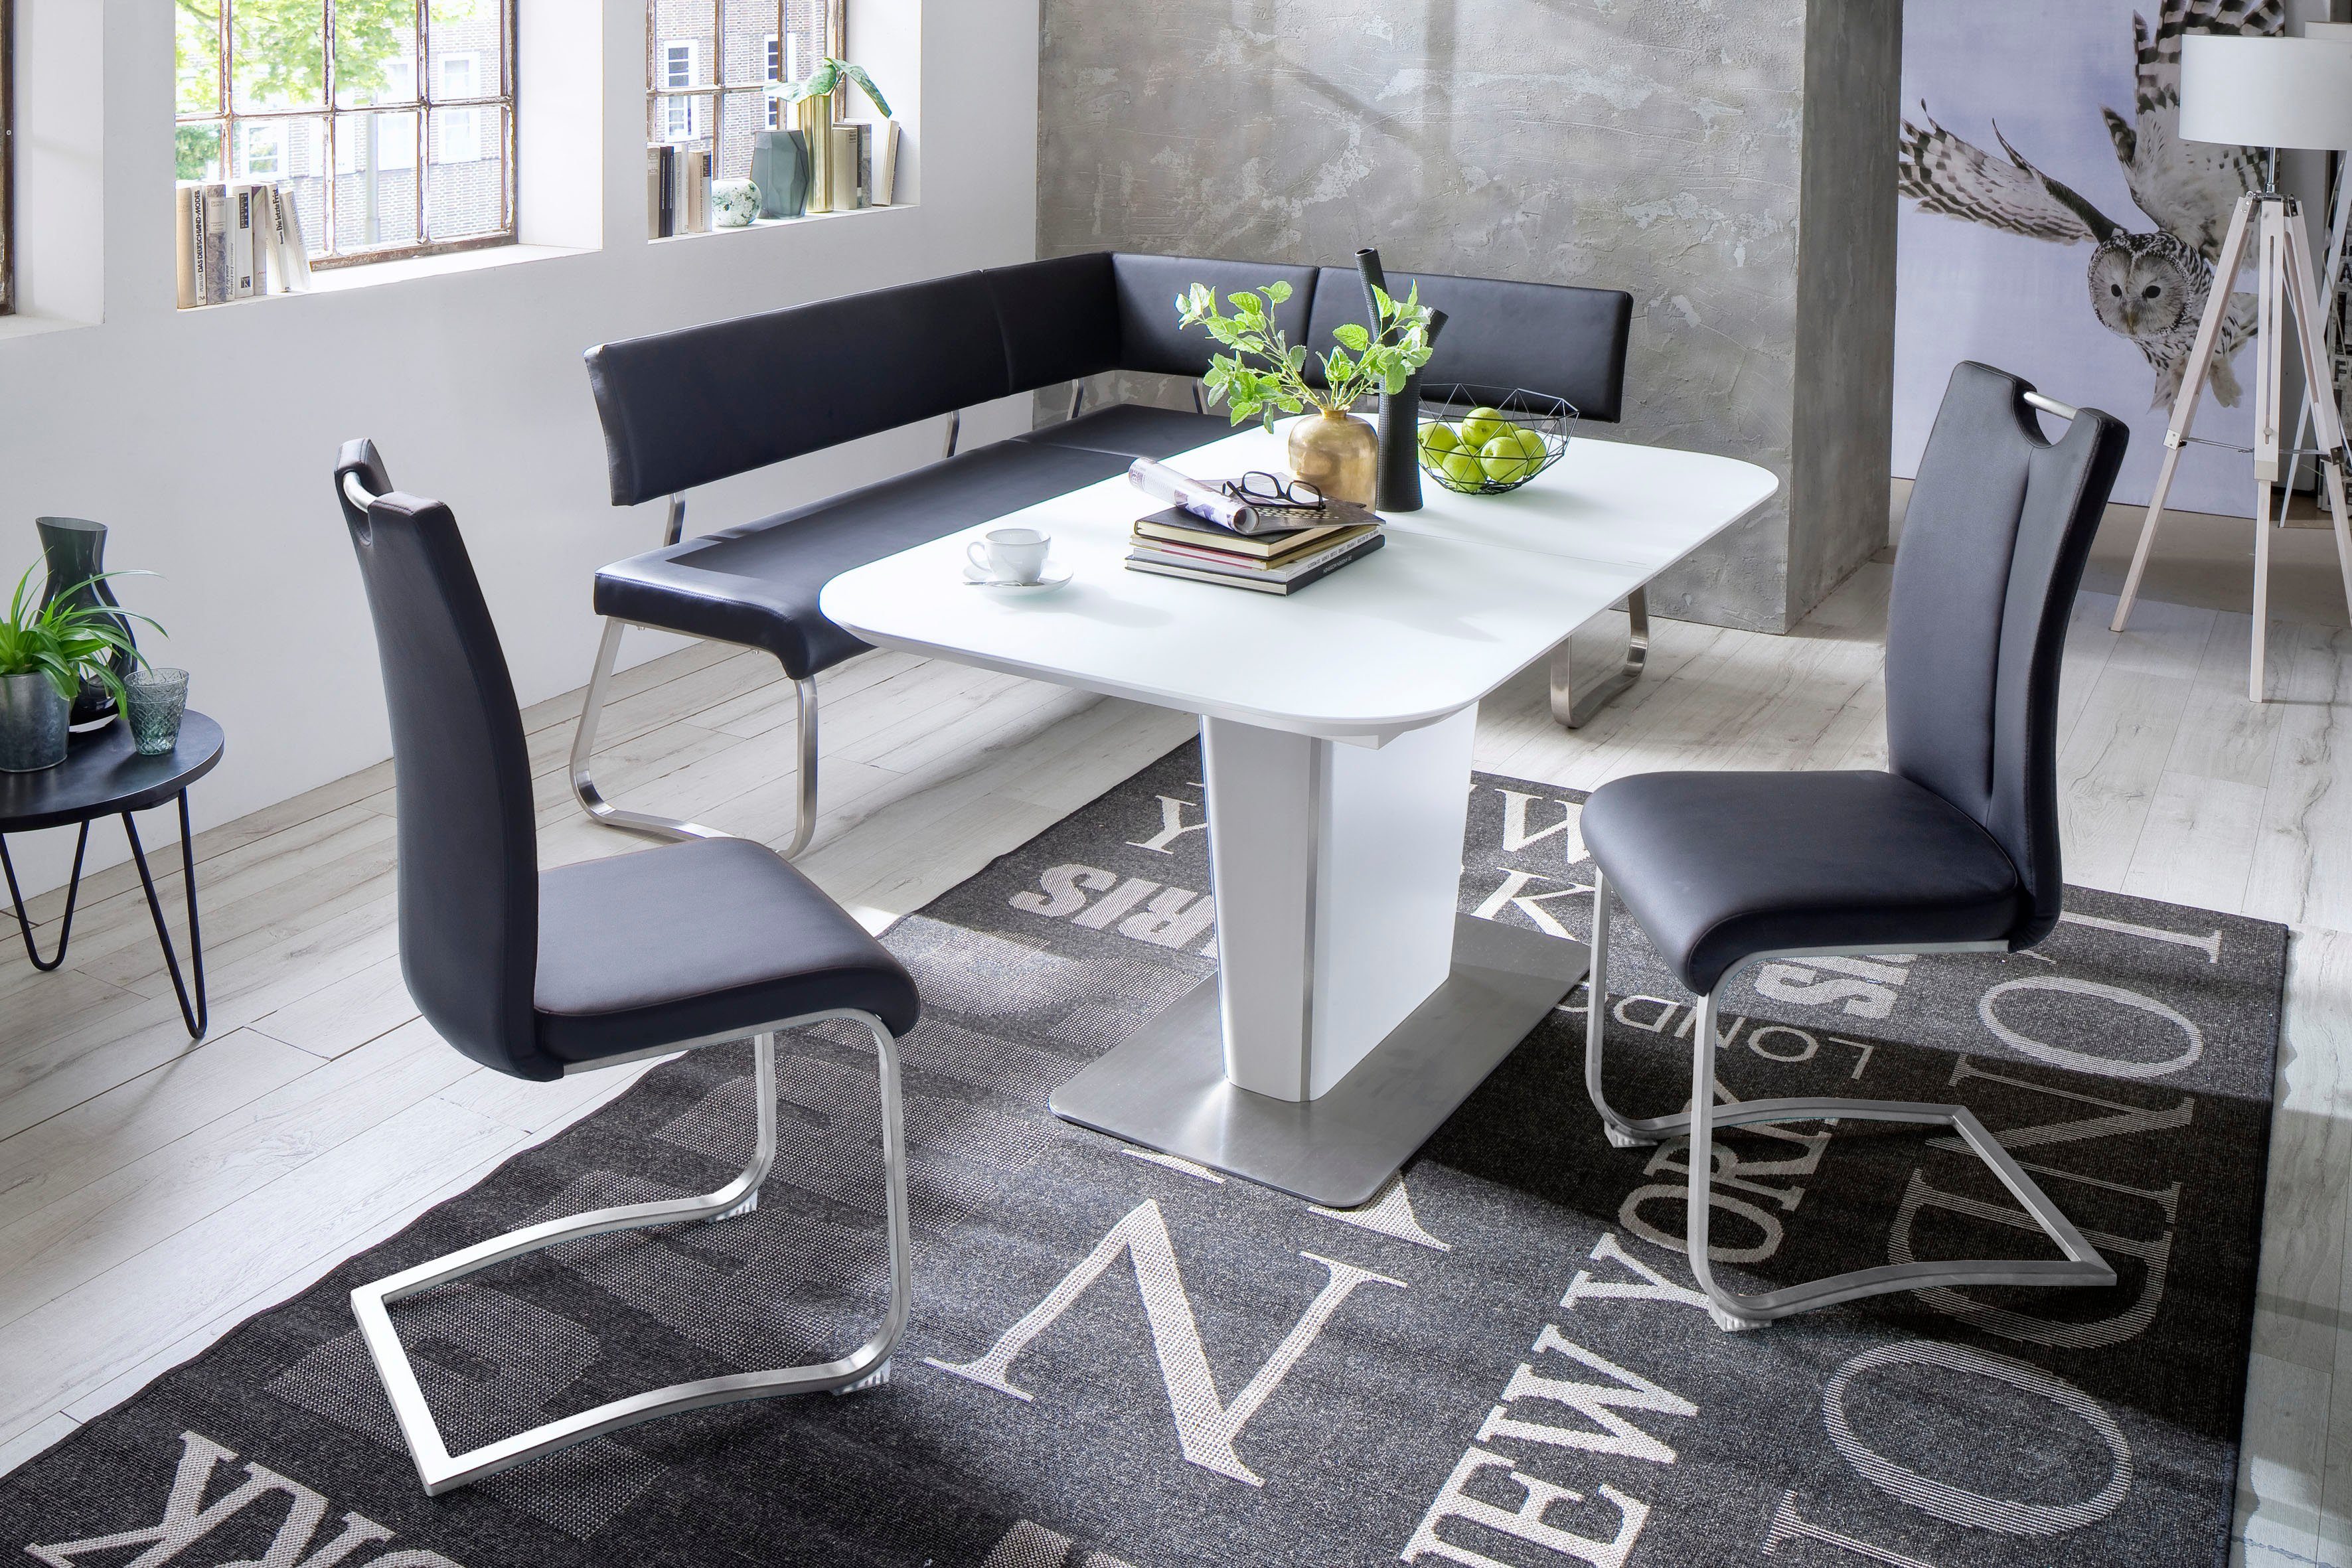 MCA furniture frei Arco, Eckbank kg 500 stellbar, Raum Breite cm, 200 belastbar im bis Schwarz Eckbank